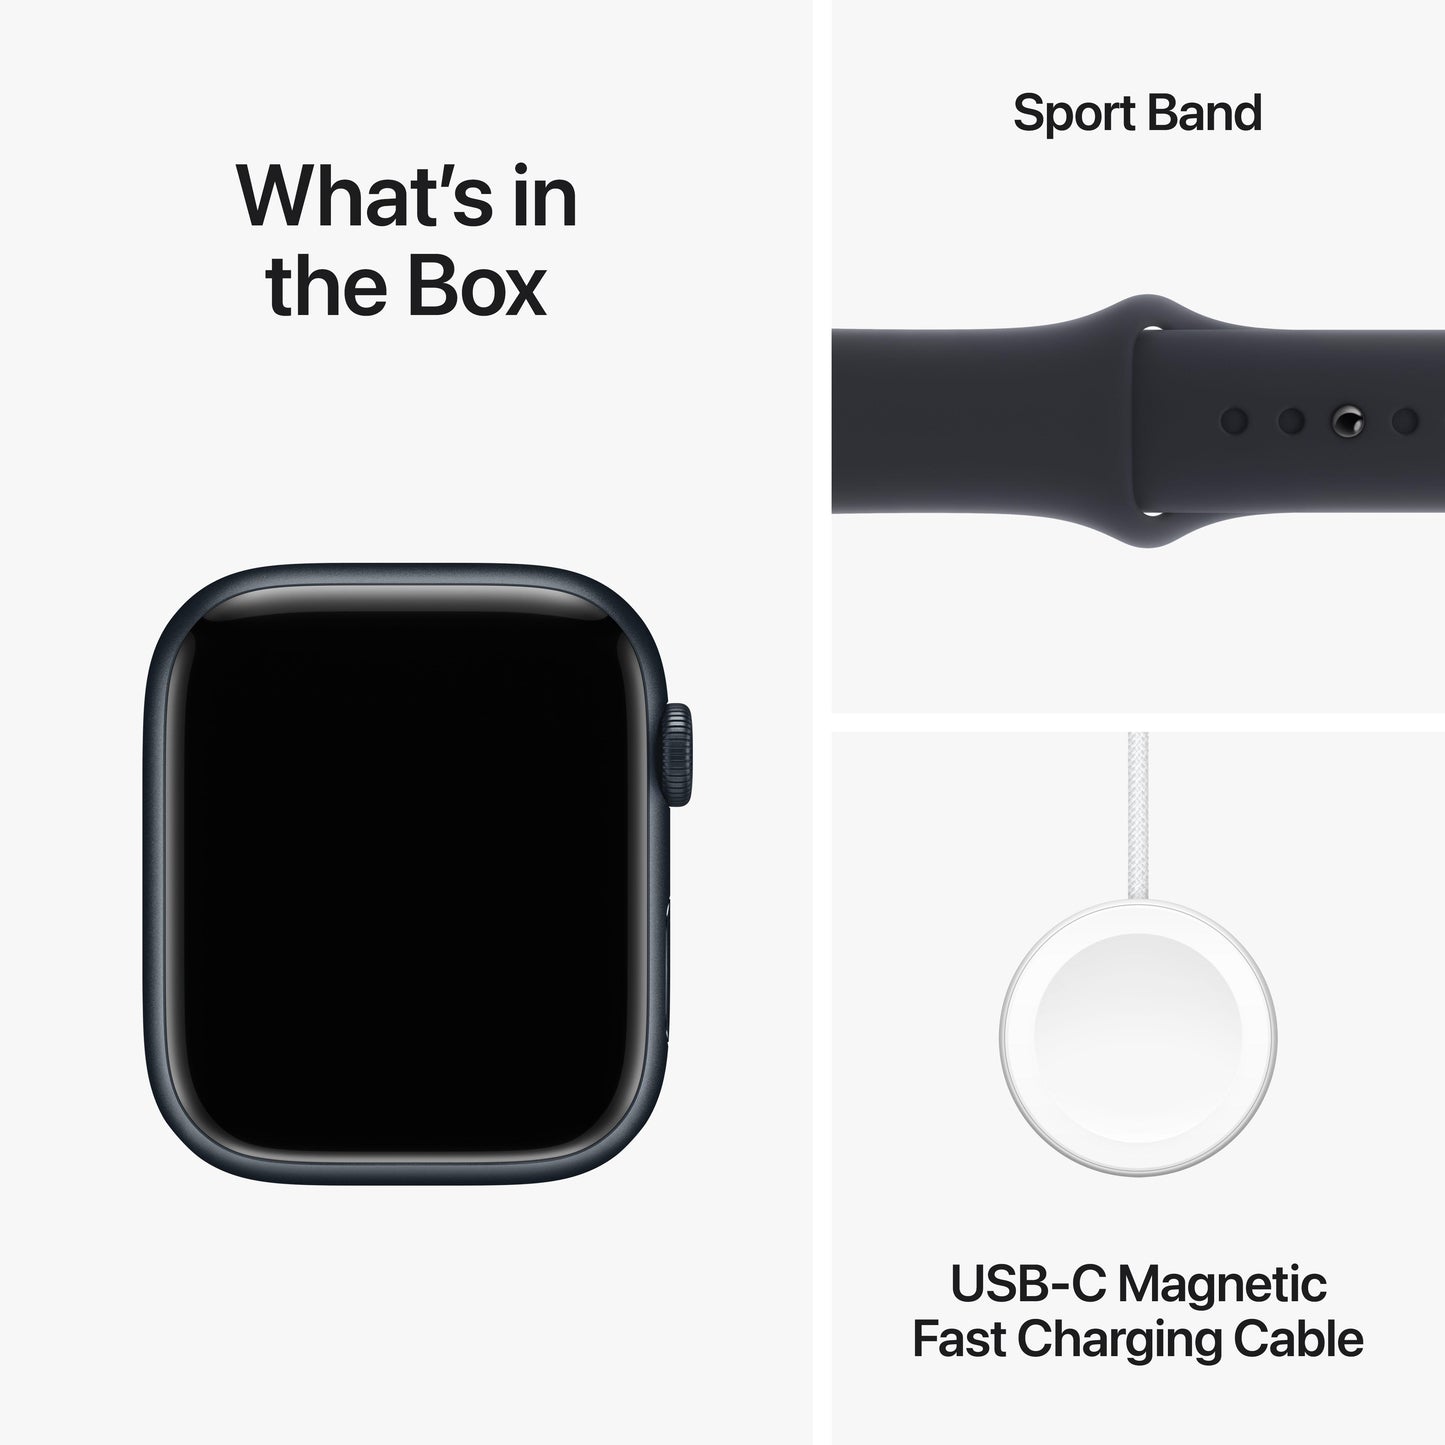 ساعة Apple Watch Series 9 GPS +Cellular مقاس 45 مم، إطار ألمنيوم ميدنايت، حزام رياضي ميدنايت - S/M